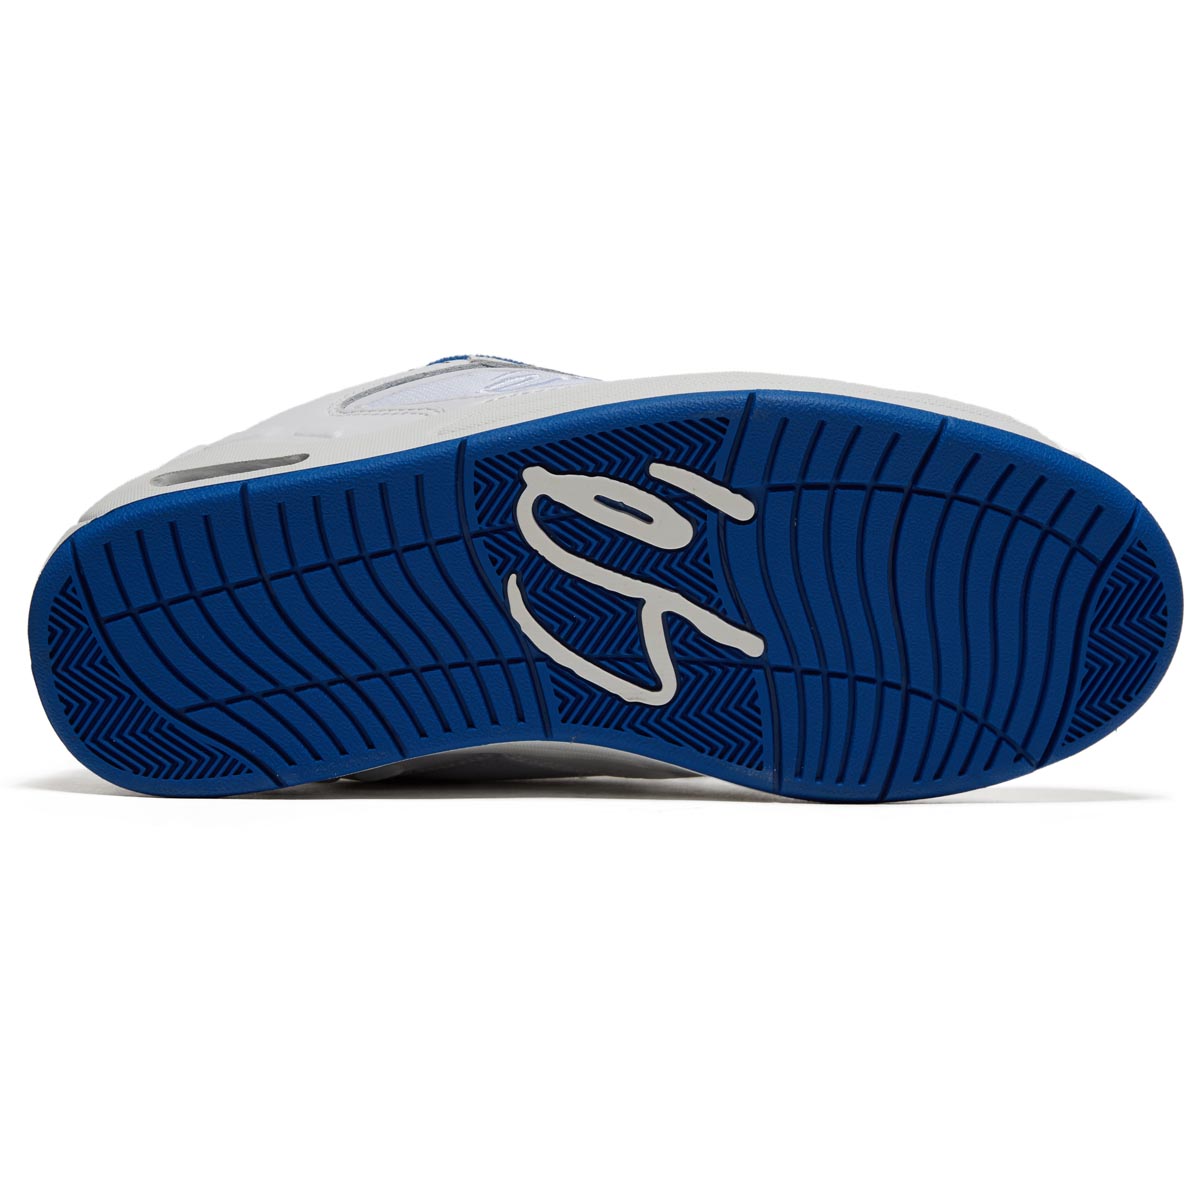 eS Creager Shoes - White/Blue image 4